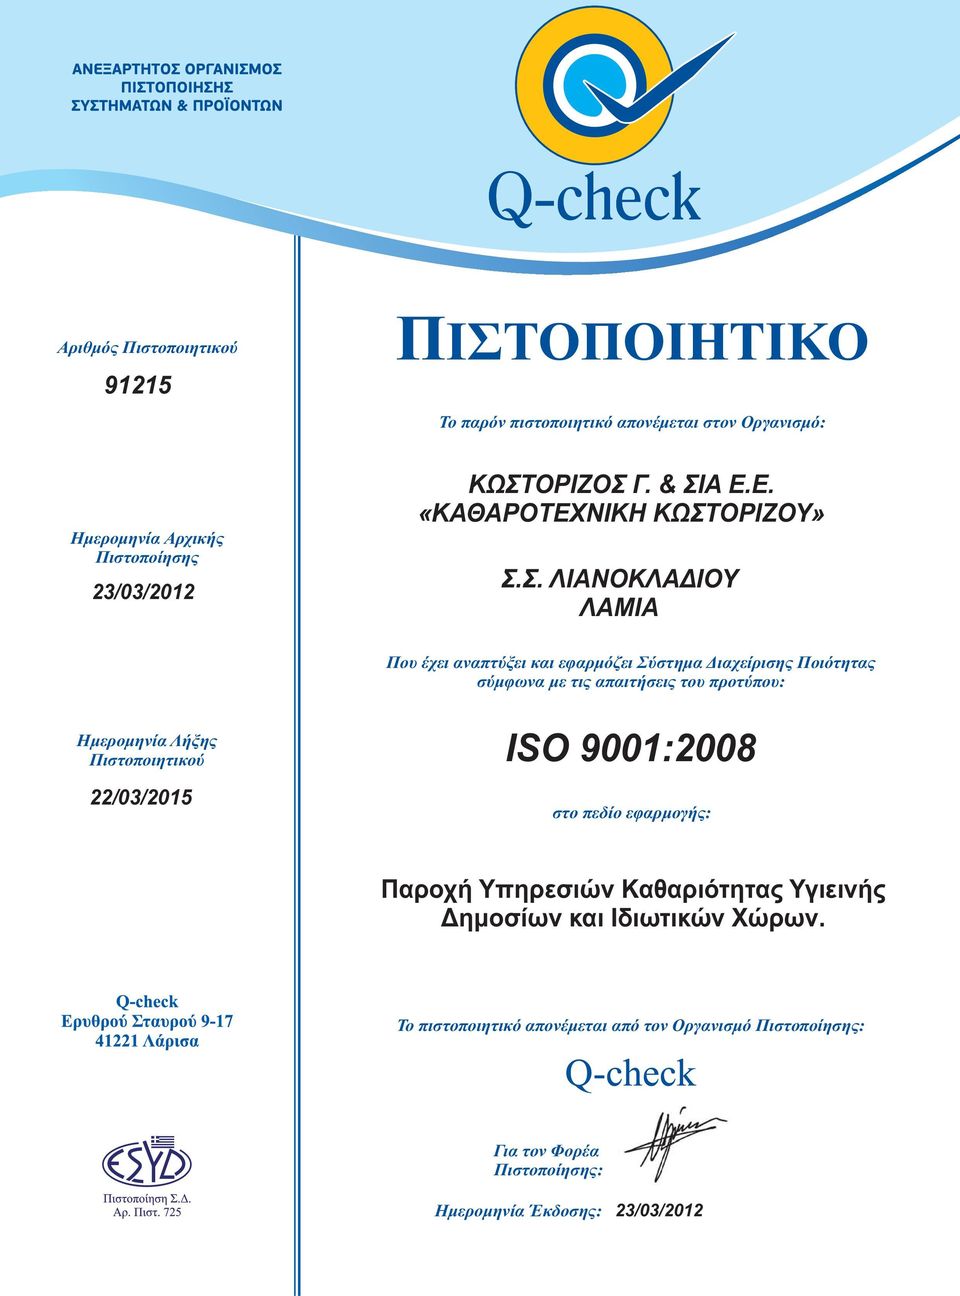 σύμφωνα με τις απαιτήσεις του προτύπου: Ημερομηνία Λήξης Πιστοποιητικού 22/03/2015 ISO 9001:2008 στο πεδίο εφαρμογής: Παροχή Υπηρεσιών